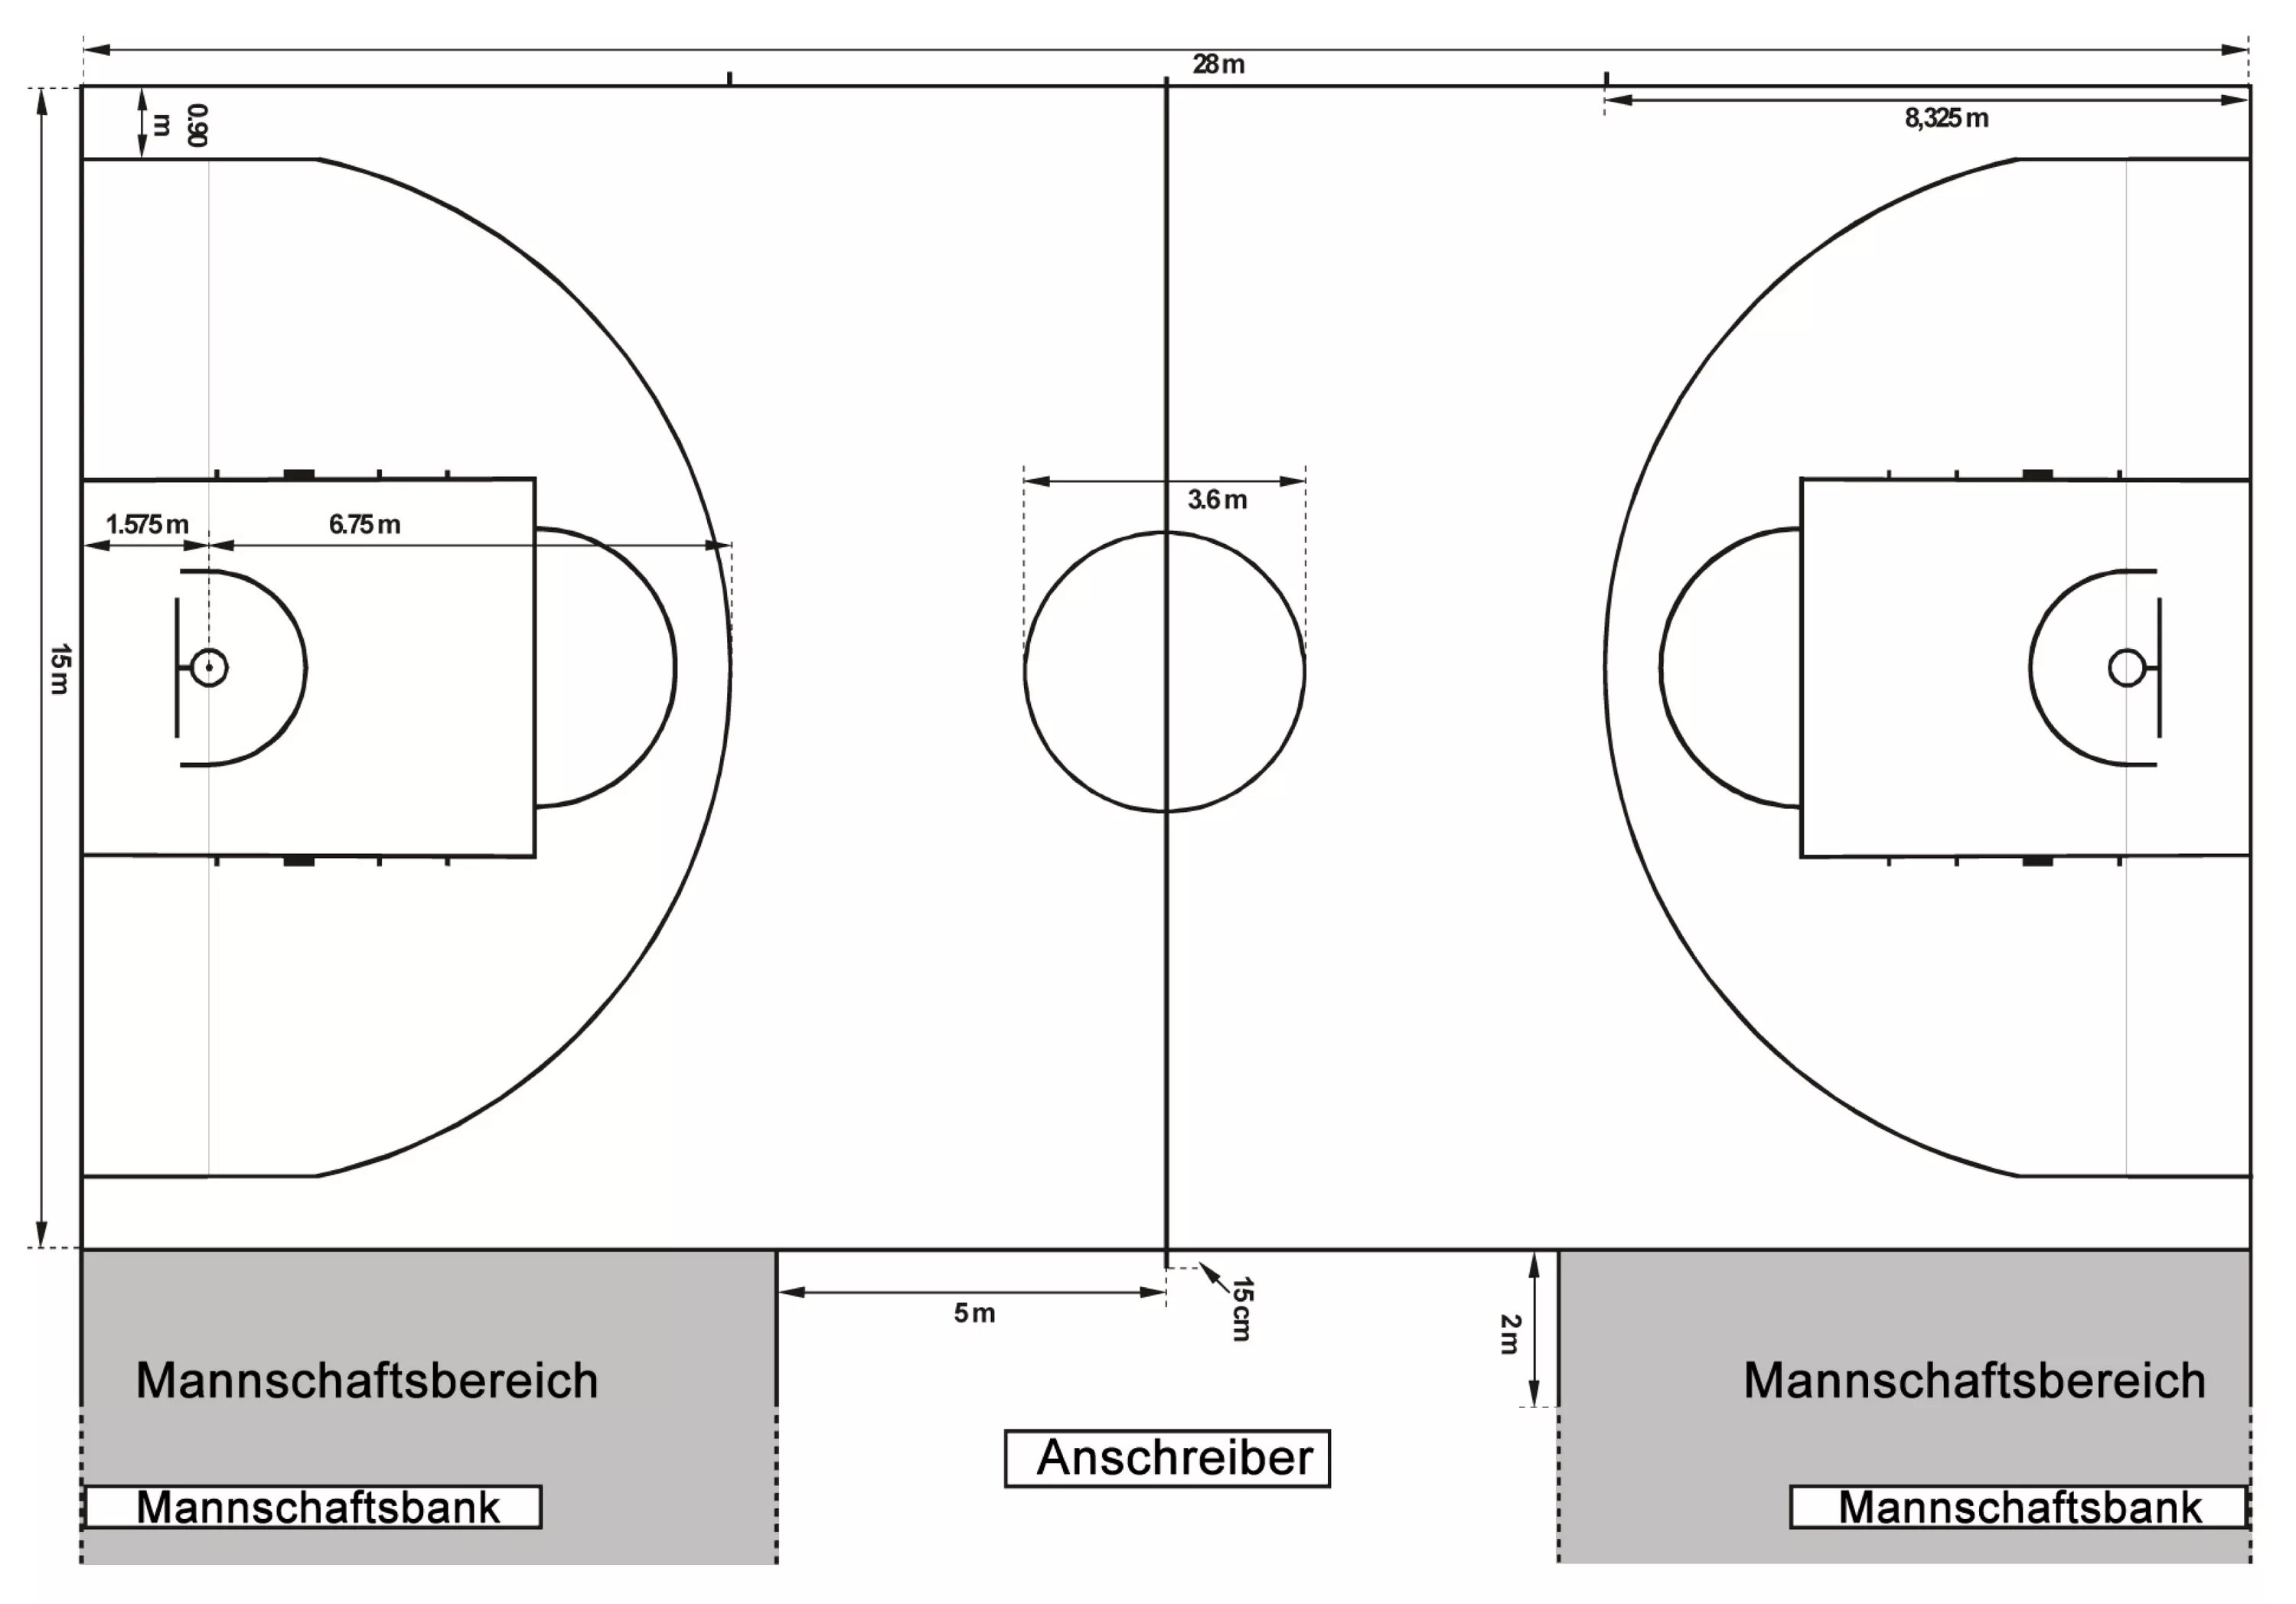 Размеры в б зоны. Размеры басткетбольноеплощадки стандарт. Размер площадки для баскетбола стандарт. Схема баскетбольной площадки с размерами. Разметка баскетбольного поля схема.